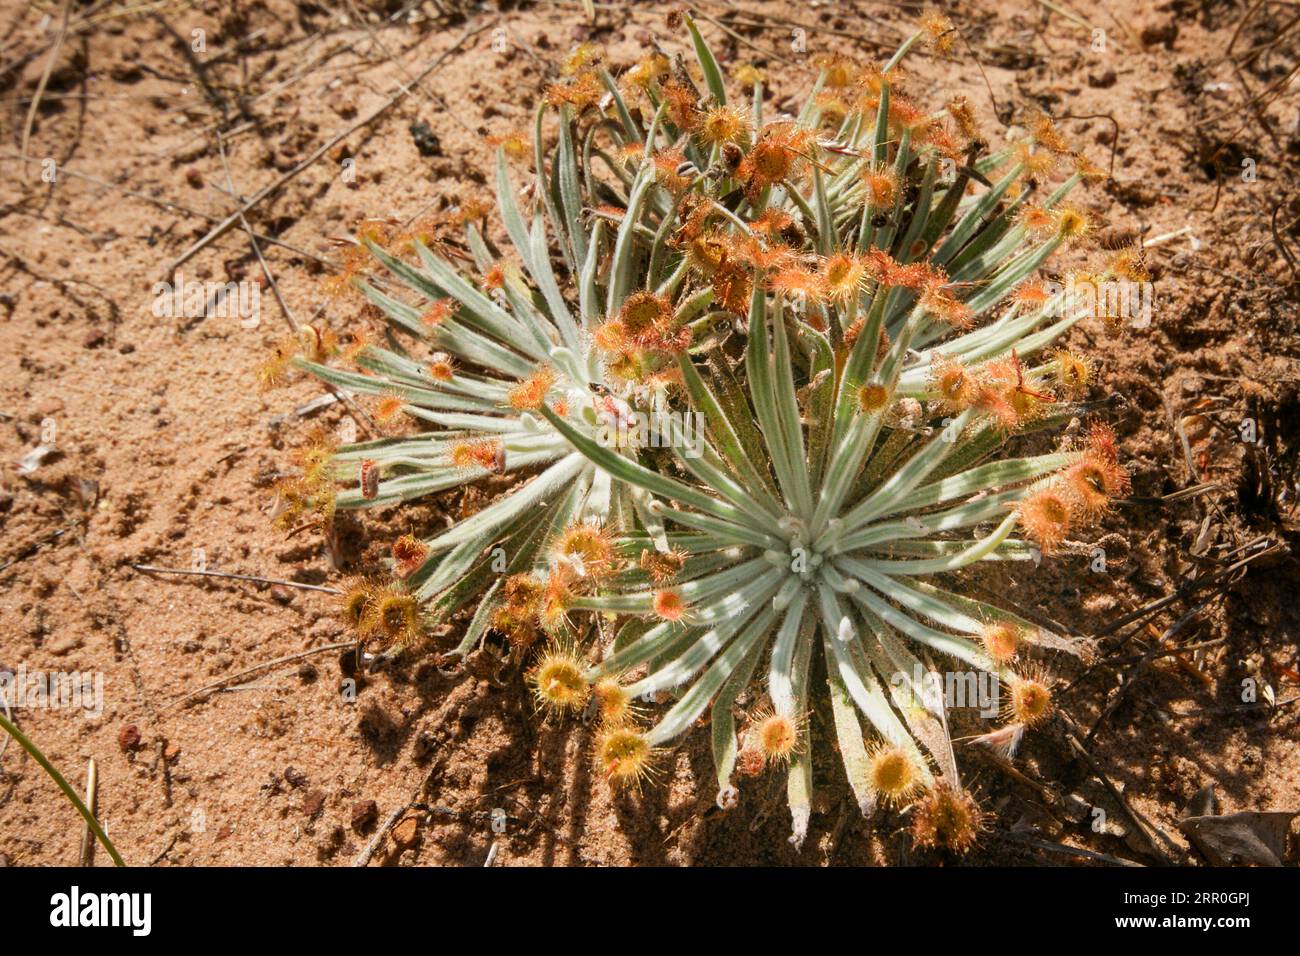 Drosera ordensis, carnivoro con punte di foglie appiccicose, che cresce nella sabbia rossa nel suo habitat naturale nel nord-ovest dell'Australia Foto Stock